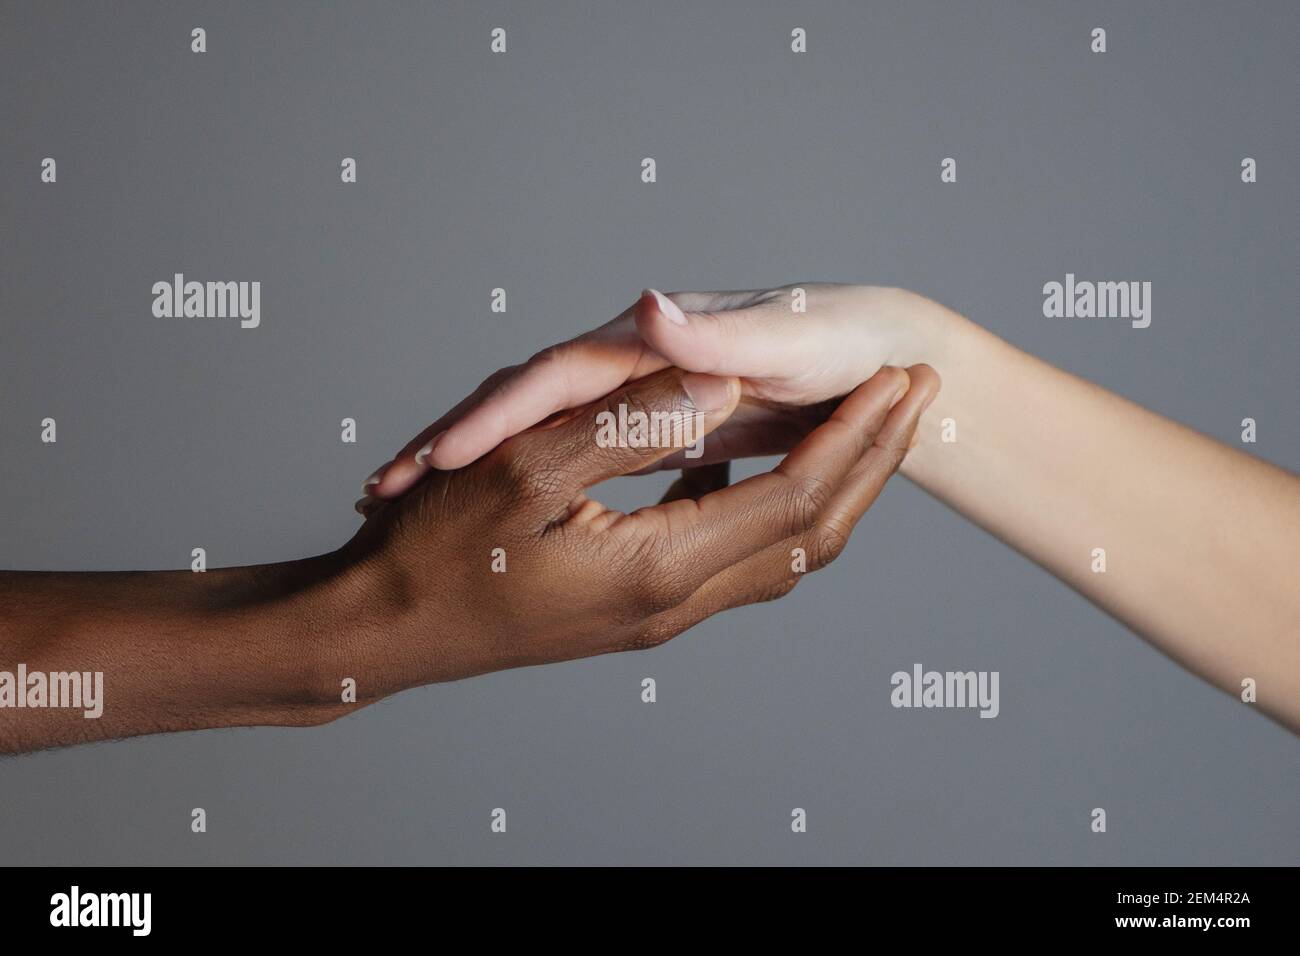 La main noire tient la main blanche dans sa paume. Concept de lutte contre le racisme. Banque D'Images